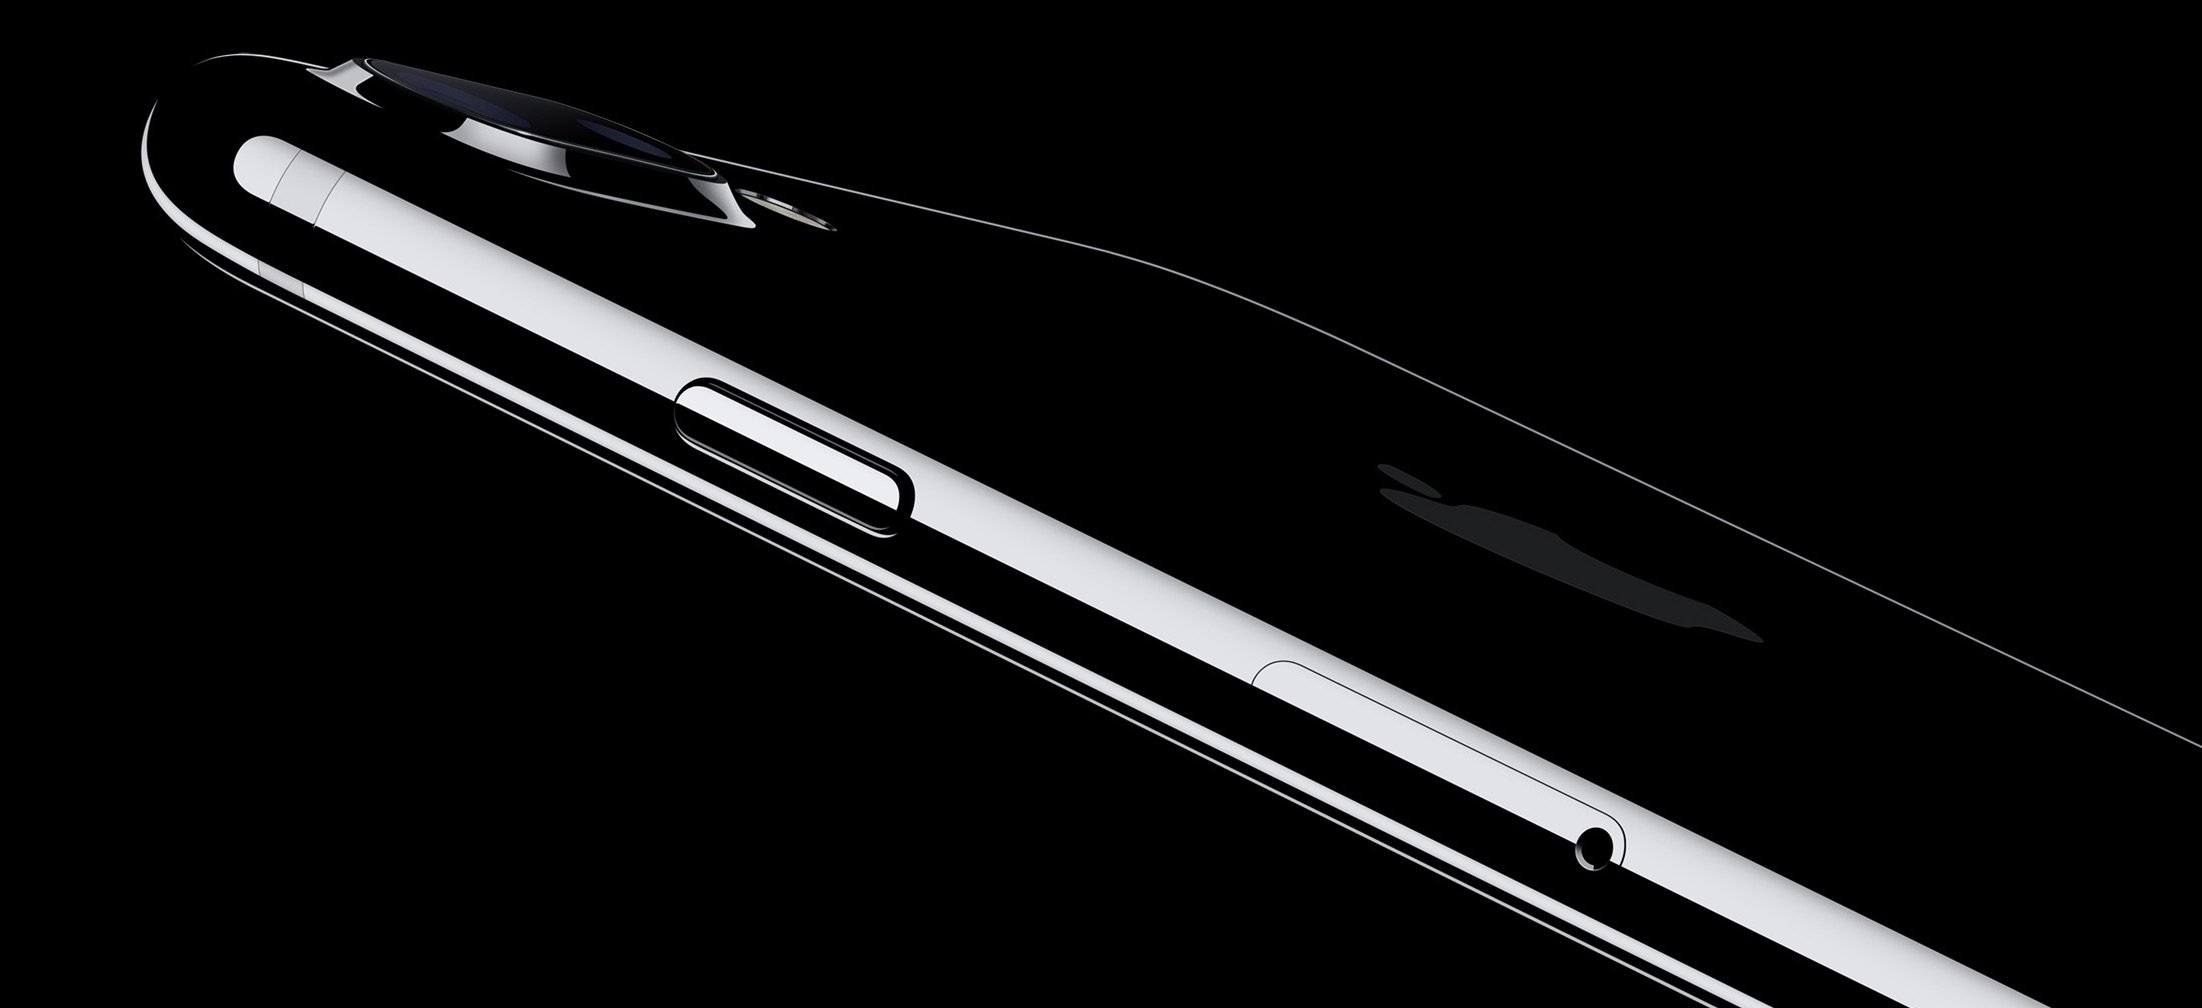 Kein schwarzes iPhone 7: iPhone-Upgrade-Programm sorgt für Ärger 1